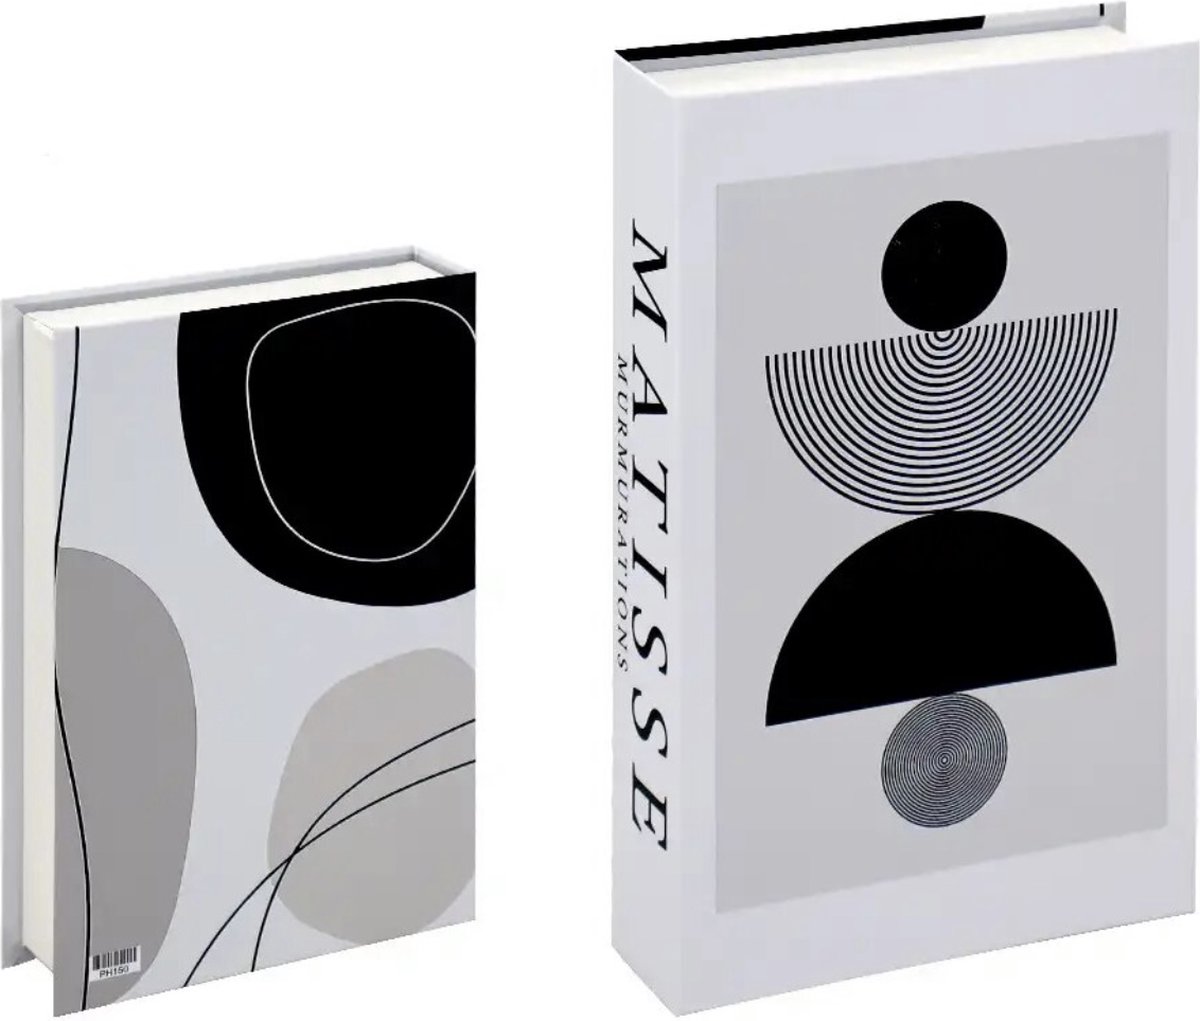 Opberg boek - Matisse - Wit - zwart - Opbergbox - Opbergdoos - Decoratie woonkamer - Boeken - Nep boek - Opbergboek